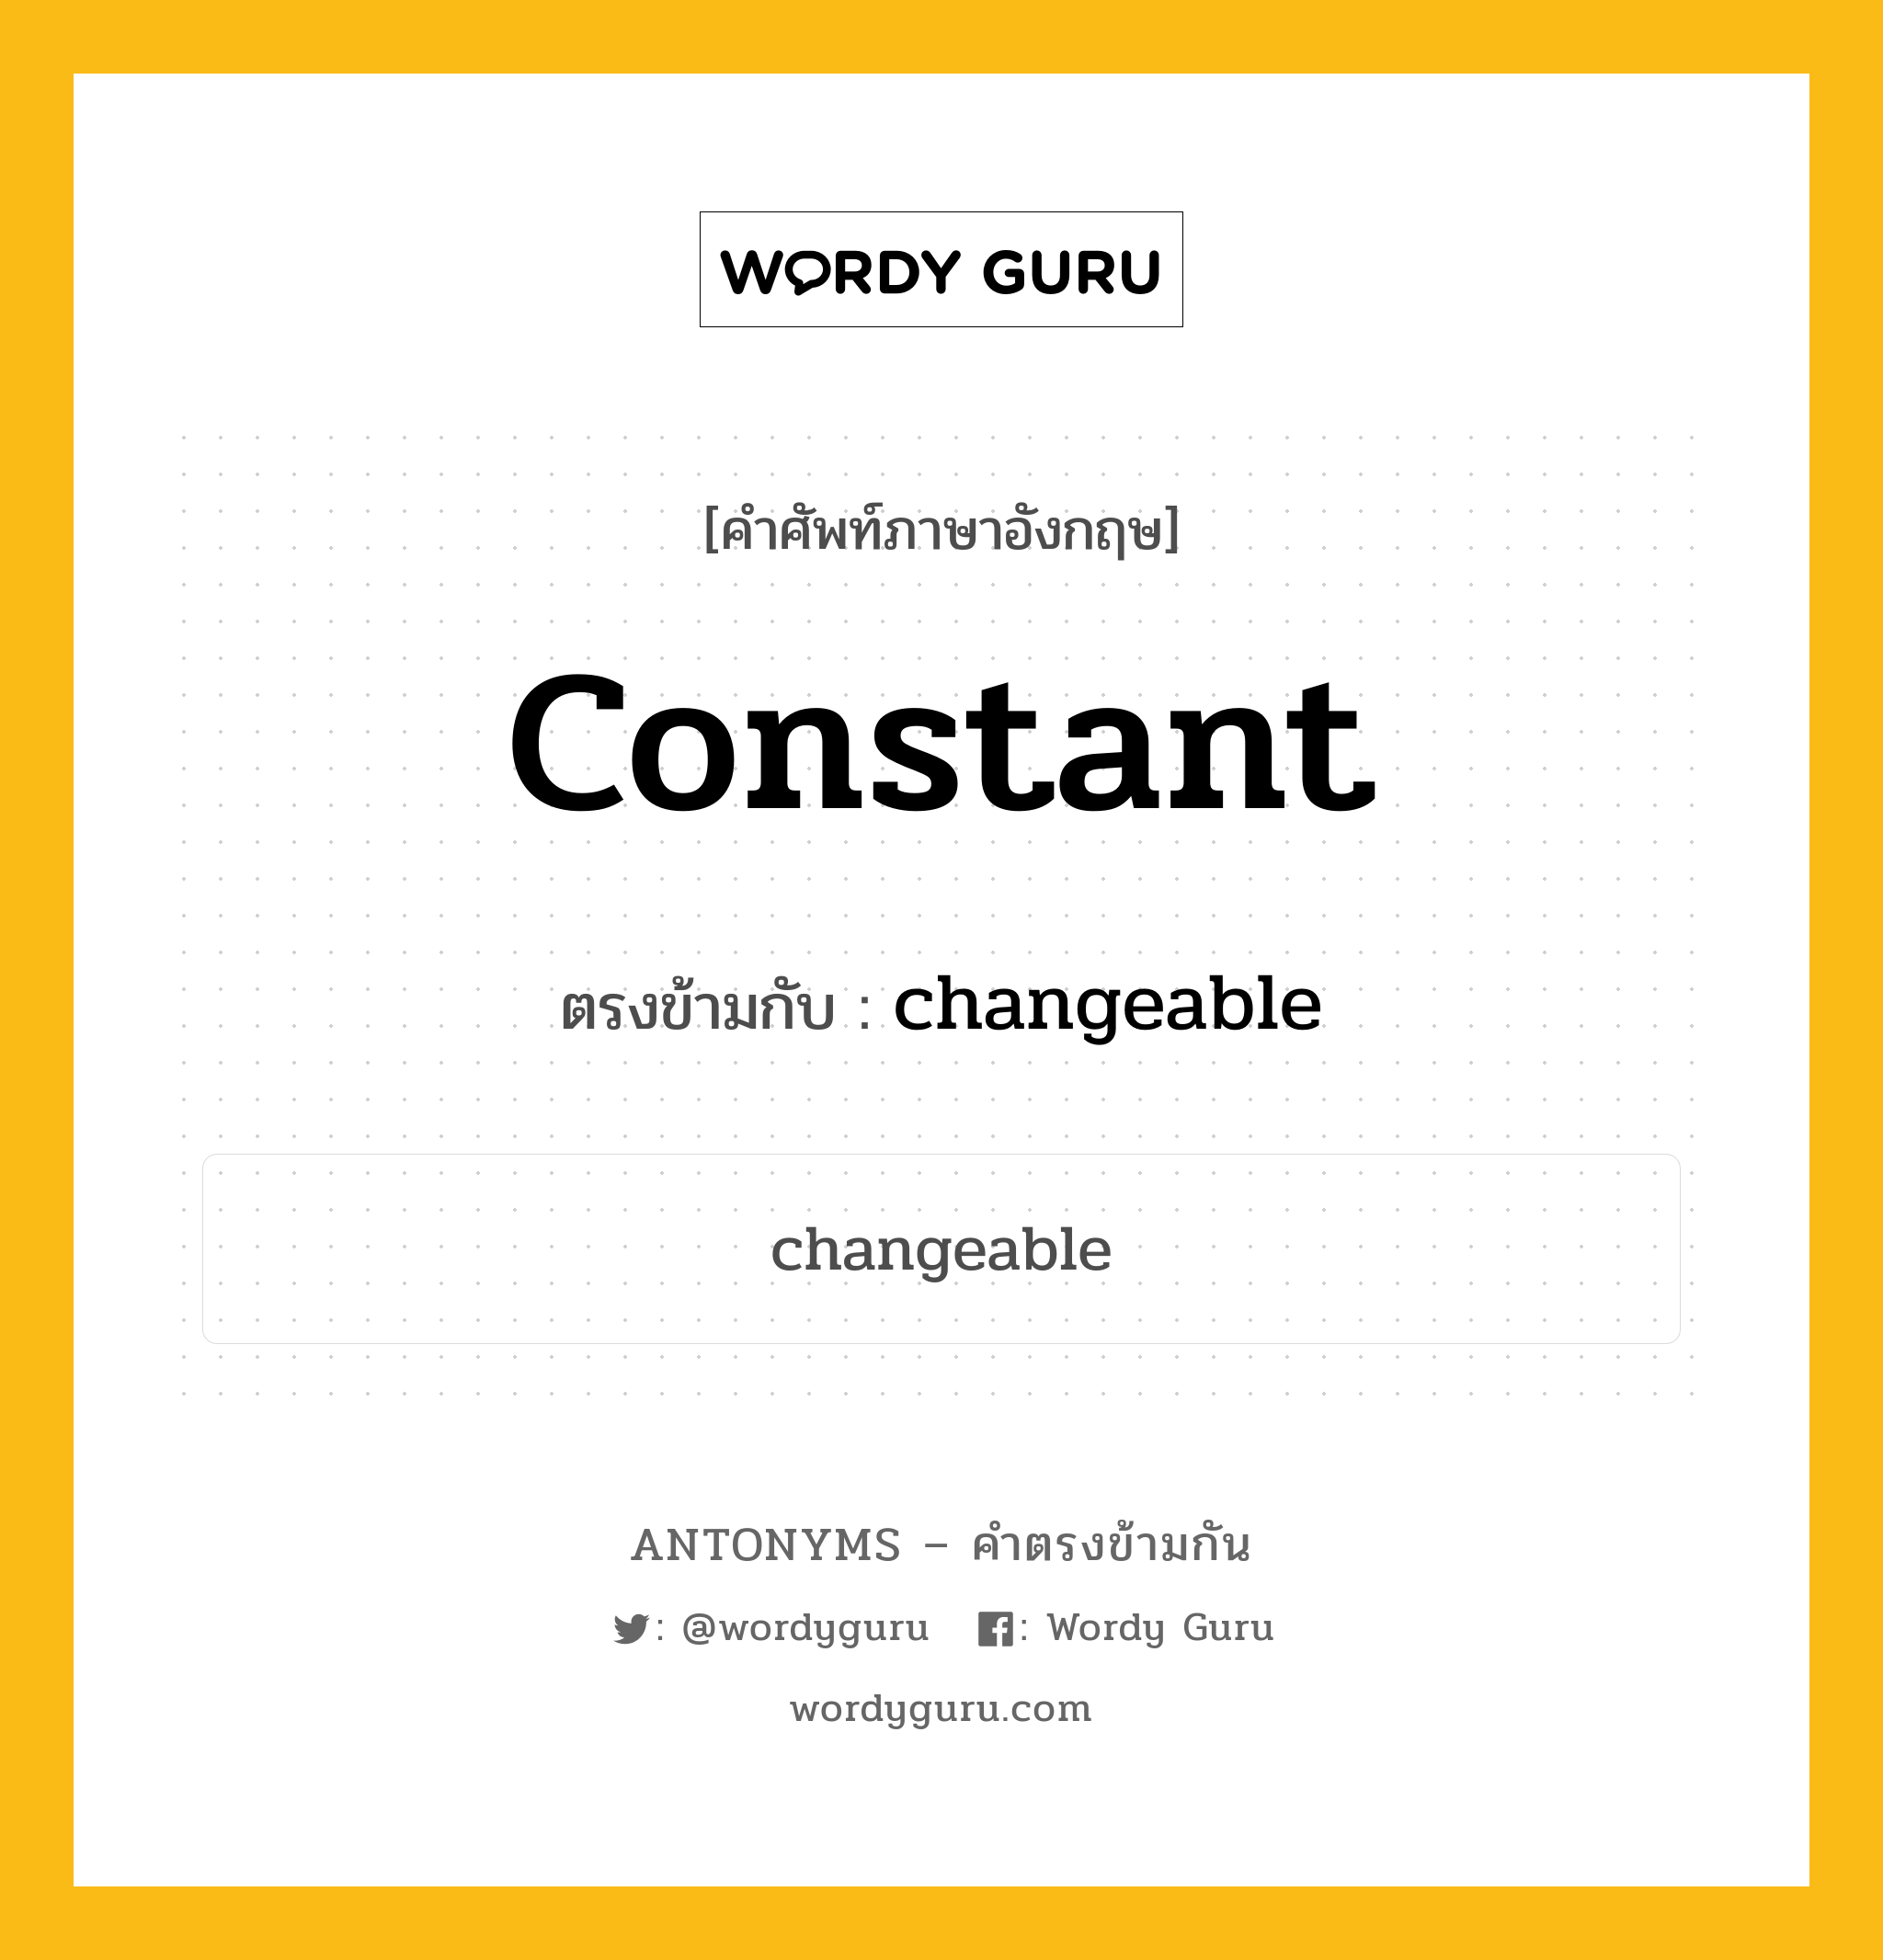 constant เป็นคำตรงข้ามกับคำไหนบ้าง?, คำศัพท์ภาษาอังกฤษ constant ตรงข้ามกับ changeable หมวด changeable